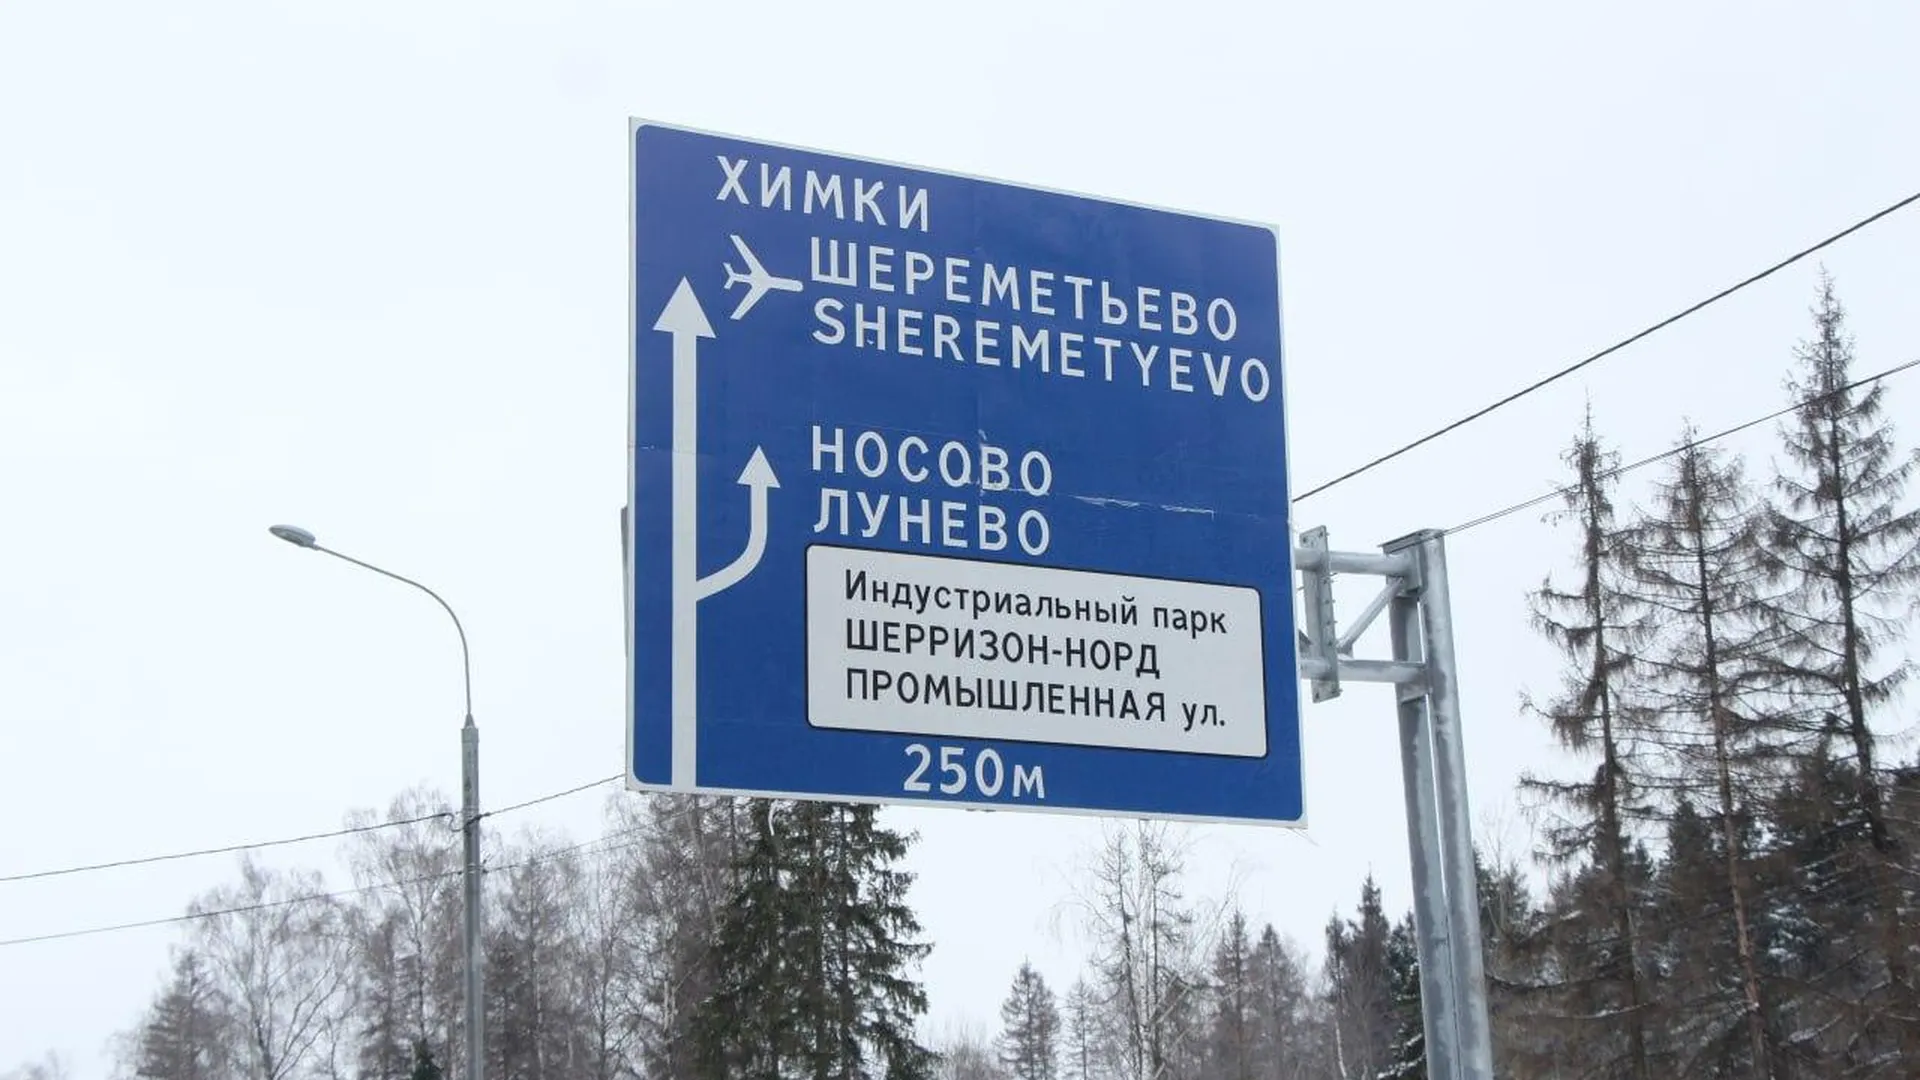 Комфортный подъезд к аэропортам организовали в Подмосковье за 4 года